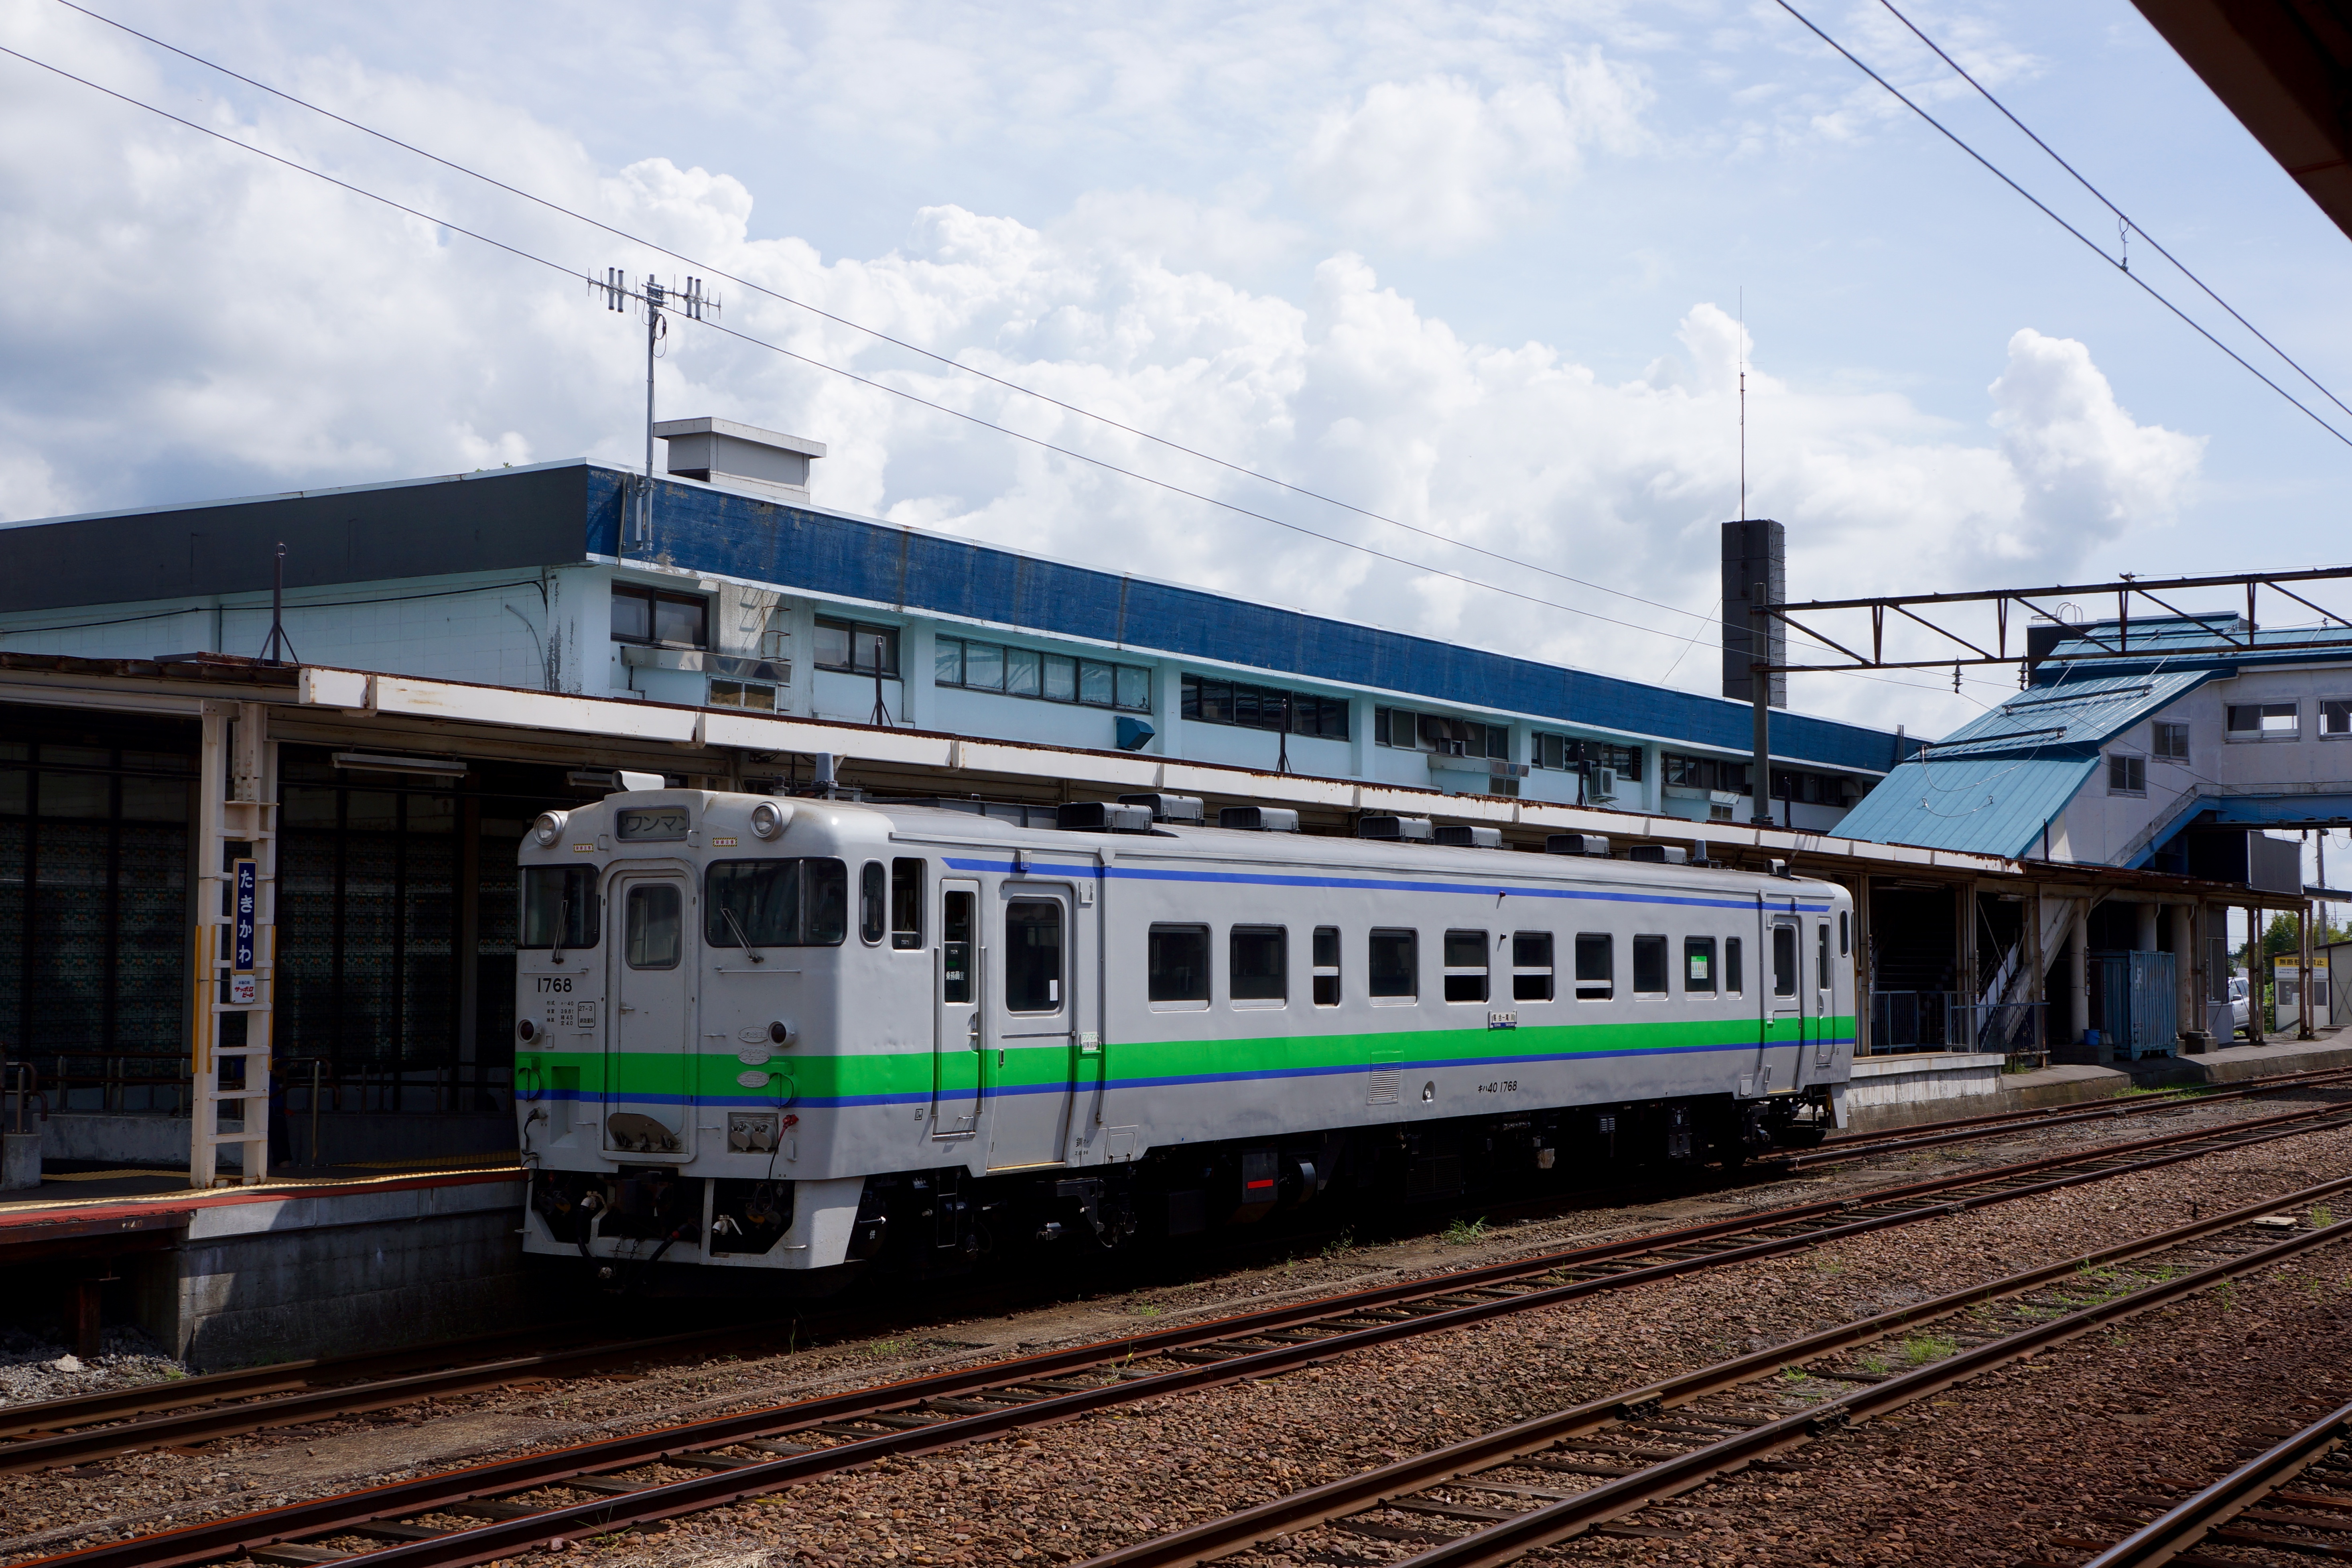 滝川駅 / takikawa station photo